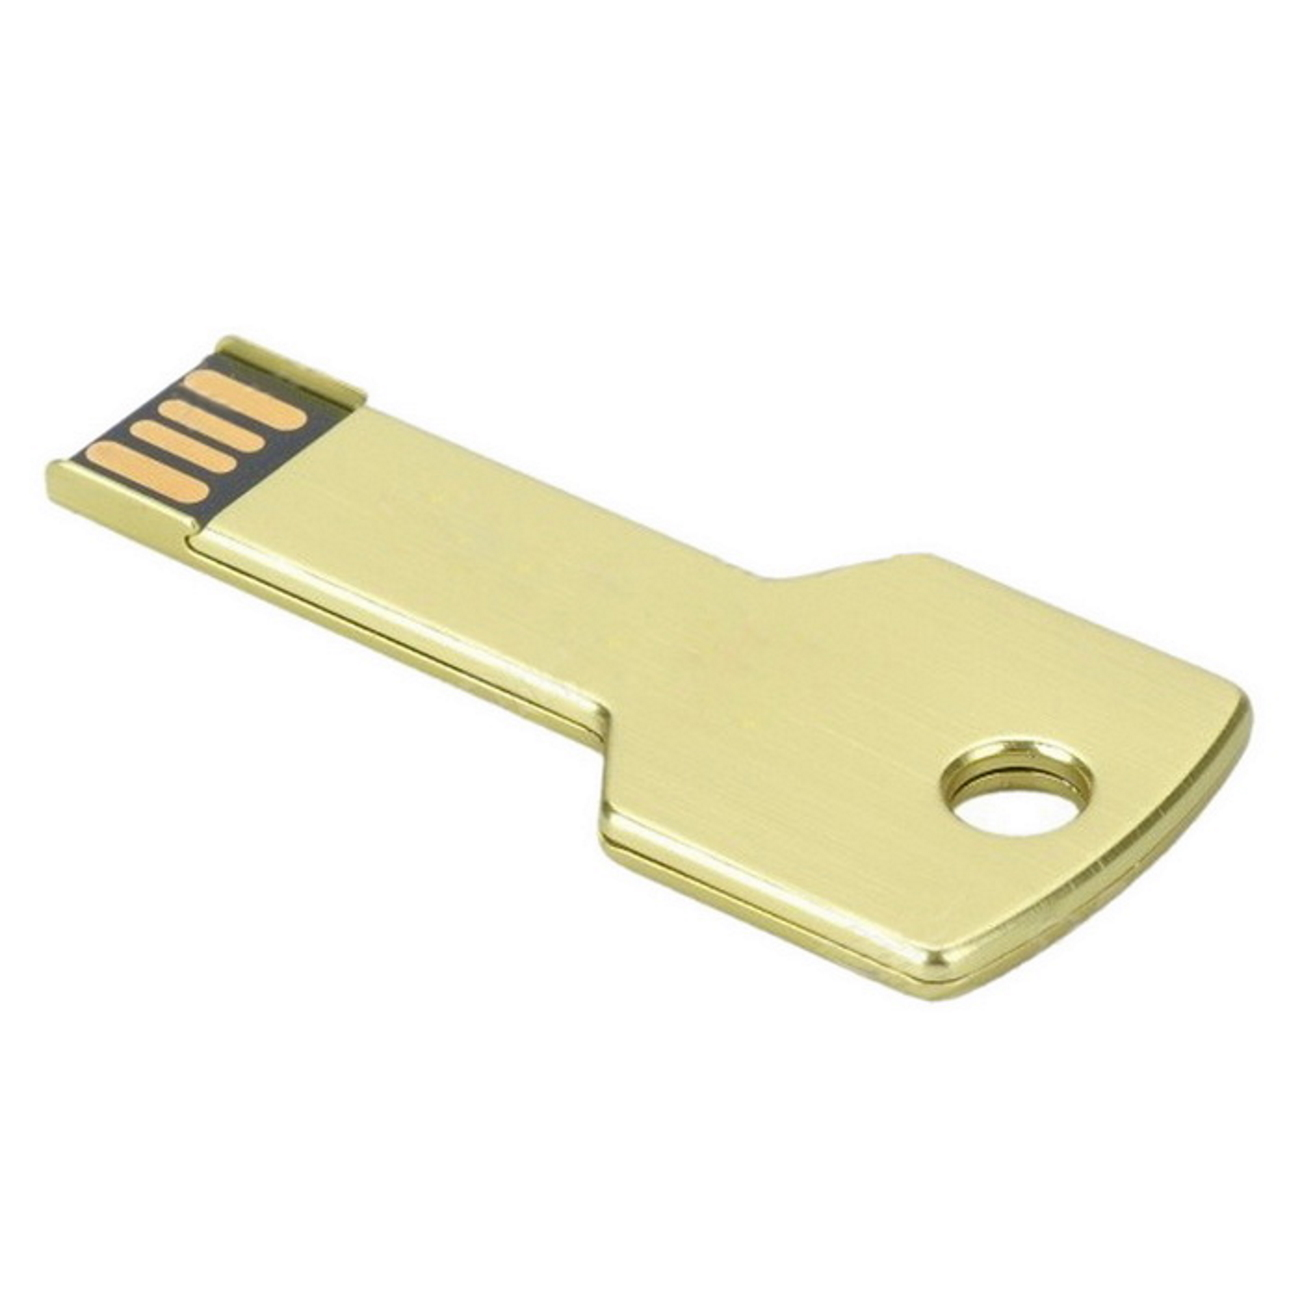 GB) USB-Stick GERMANY 2 2GB Key Gold (Gold, USB